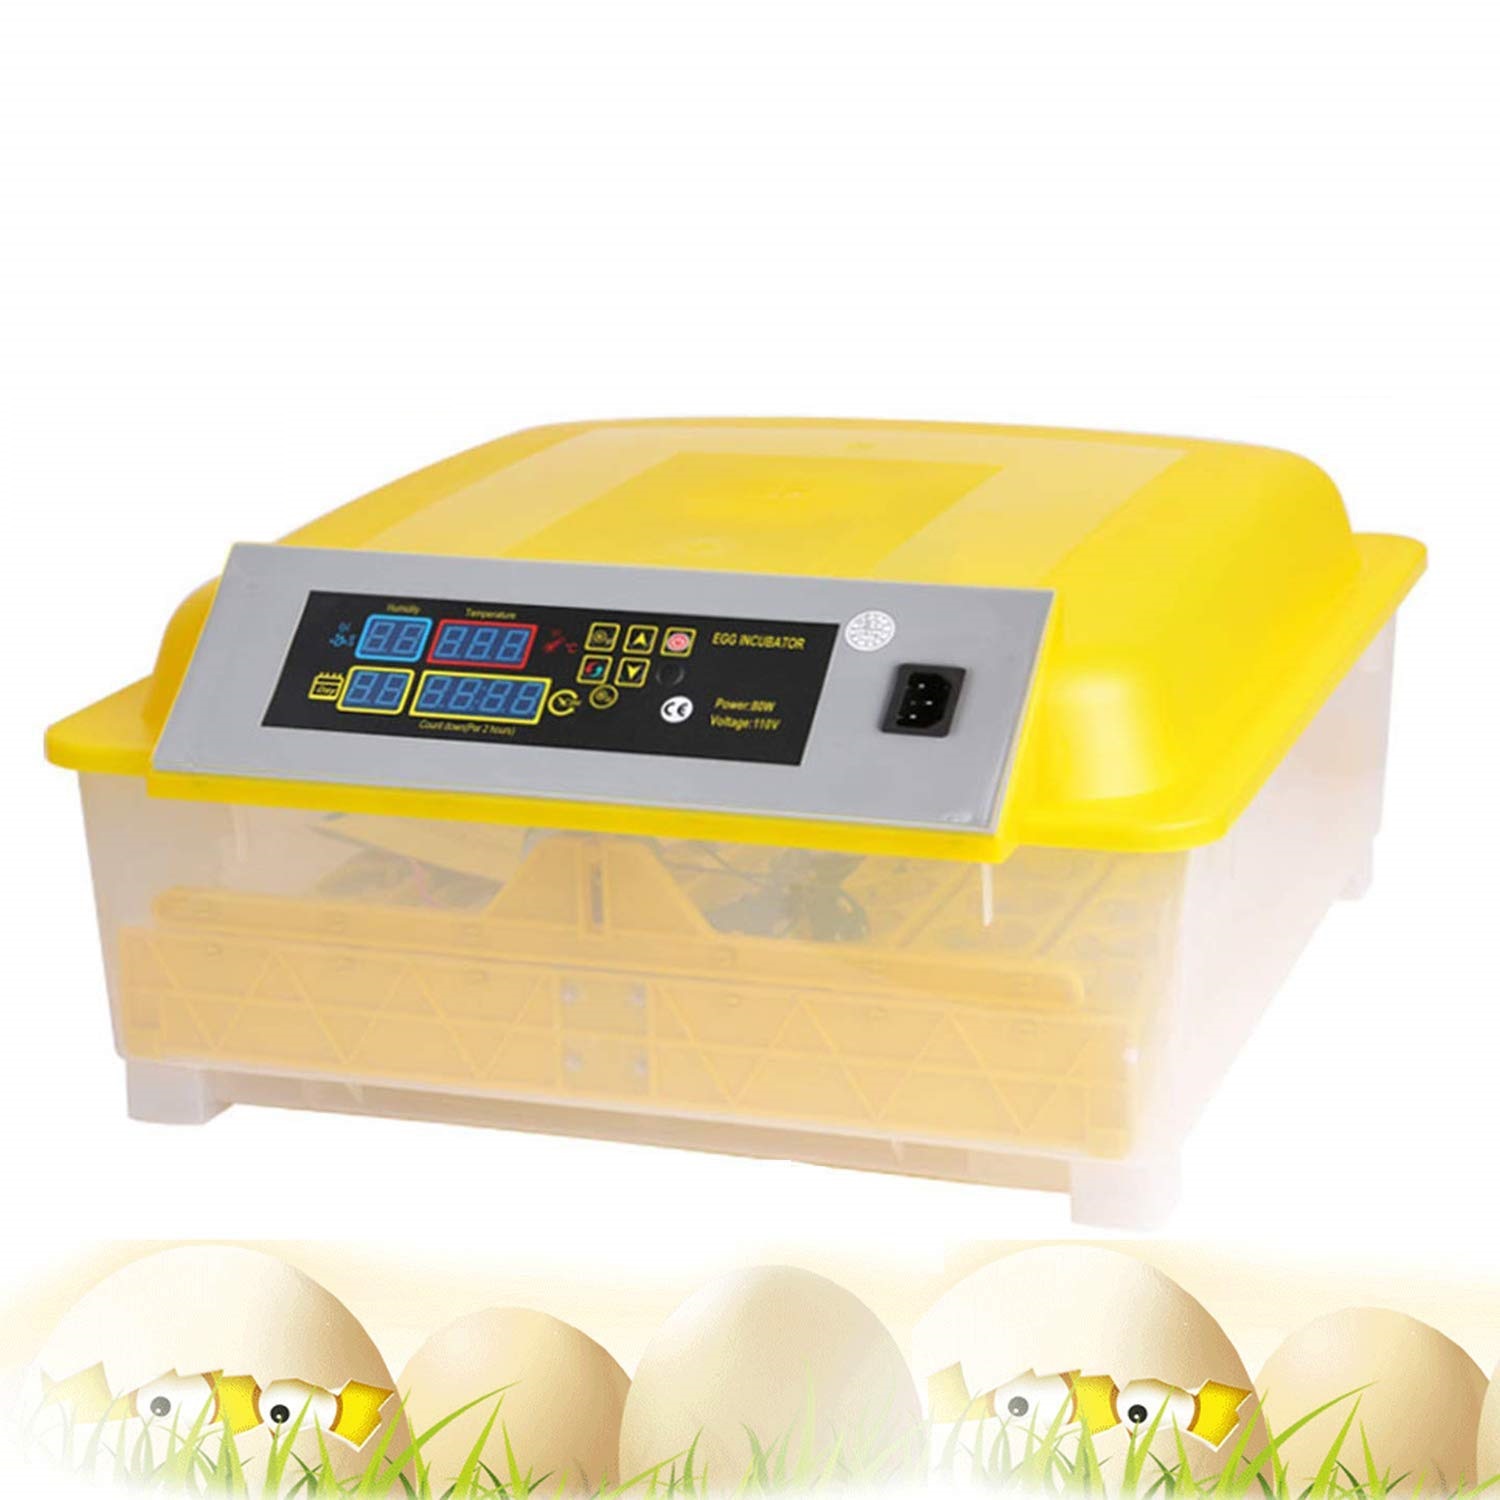 OppsDecor Egg Incubator